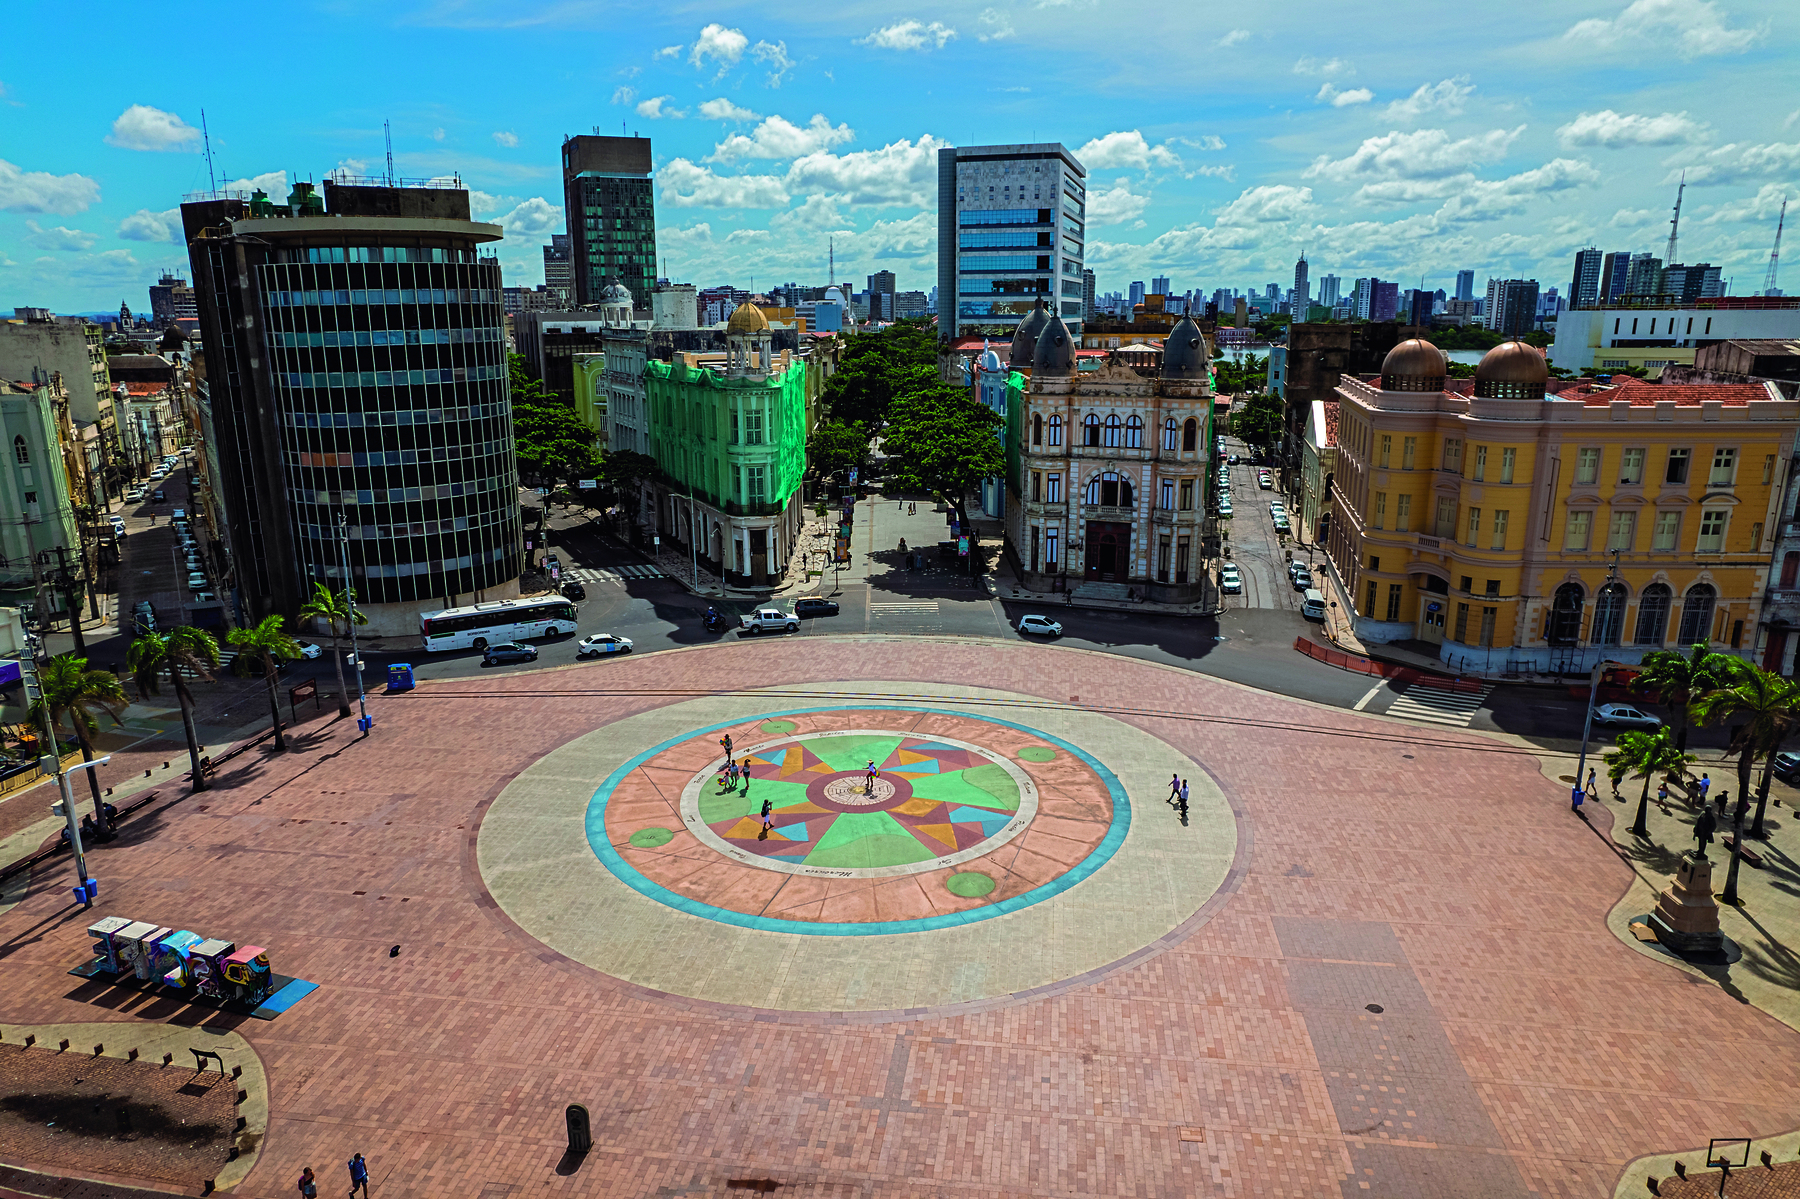 Fotografia. Um espaço público largo com um círculo no centro. Ao redor há prédios e ruas.